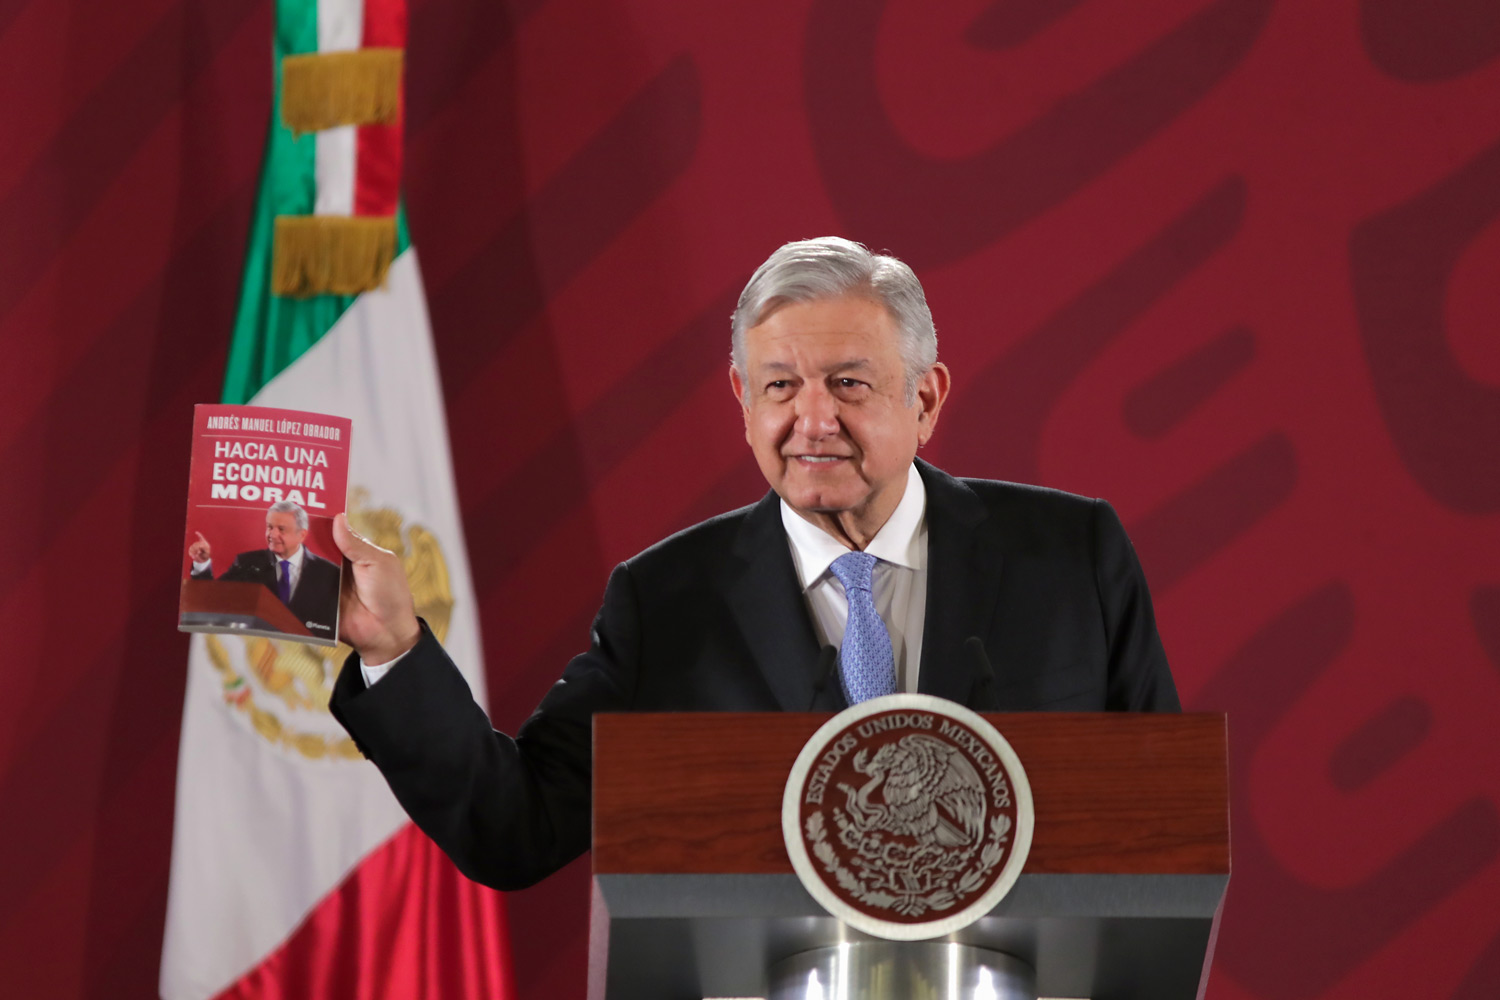 Presidente AMLO presenta libro 'Hacia una economía moral', alternativa al  modelo neoliberal – AMLO